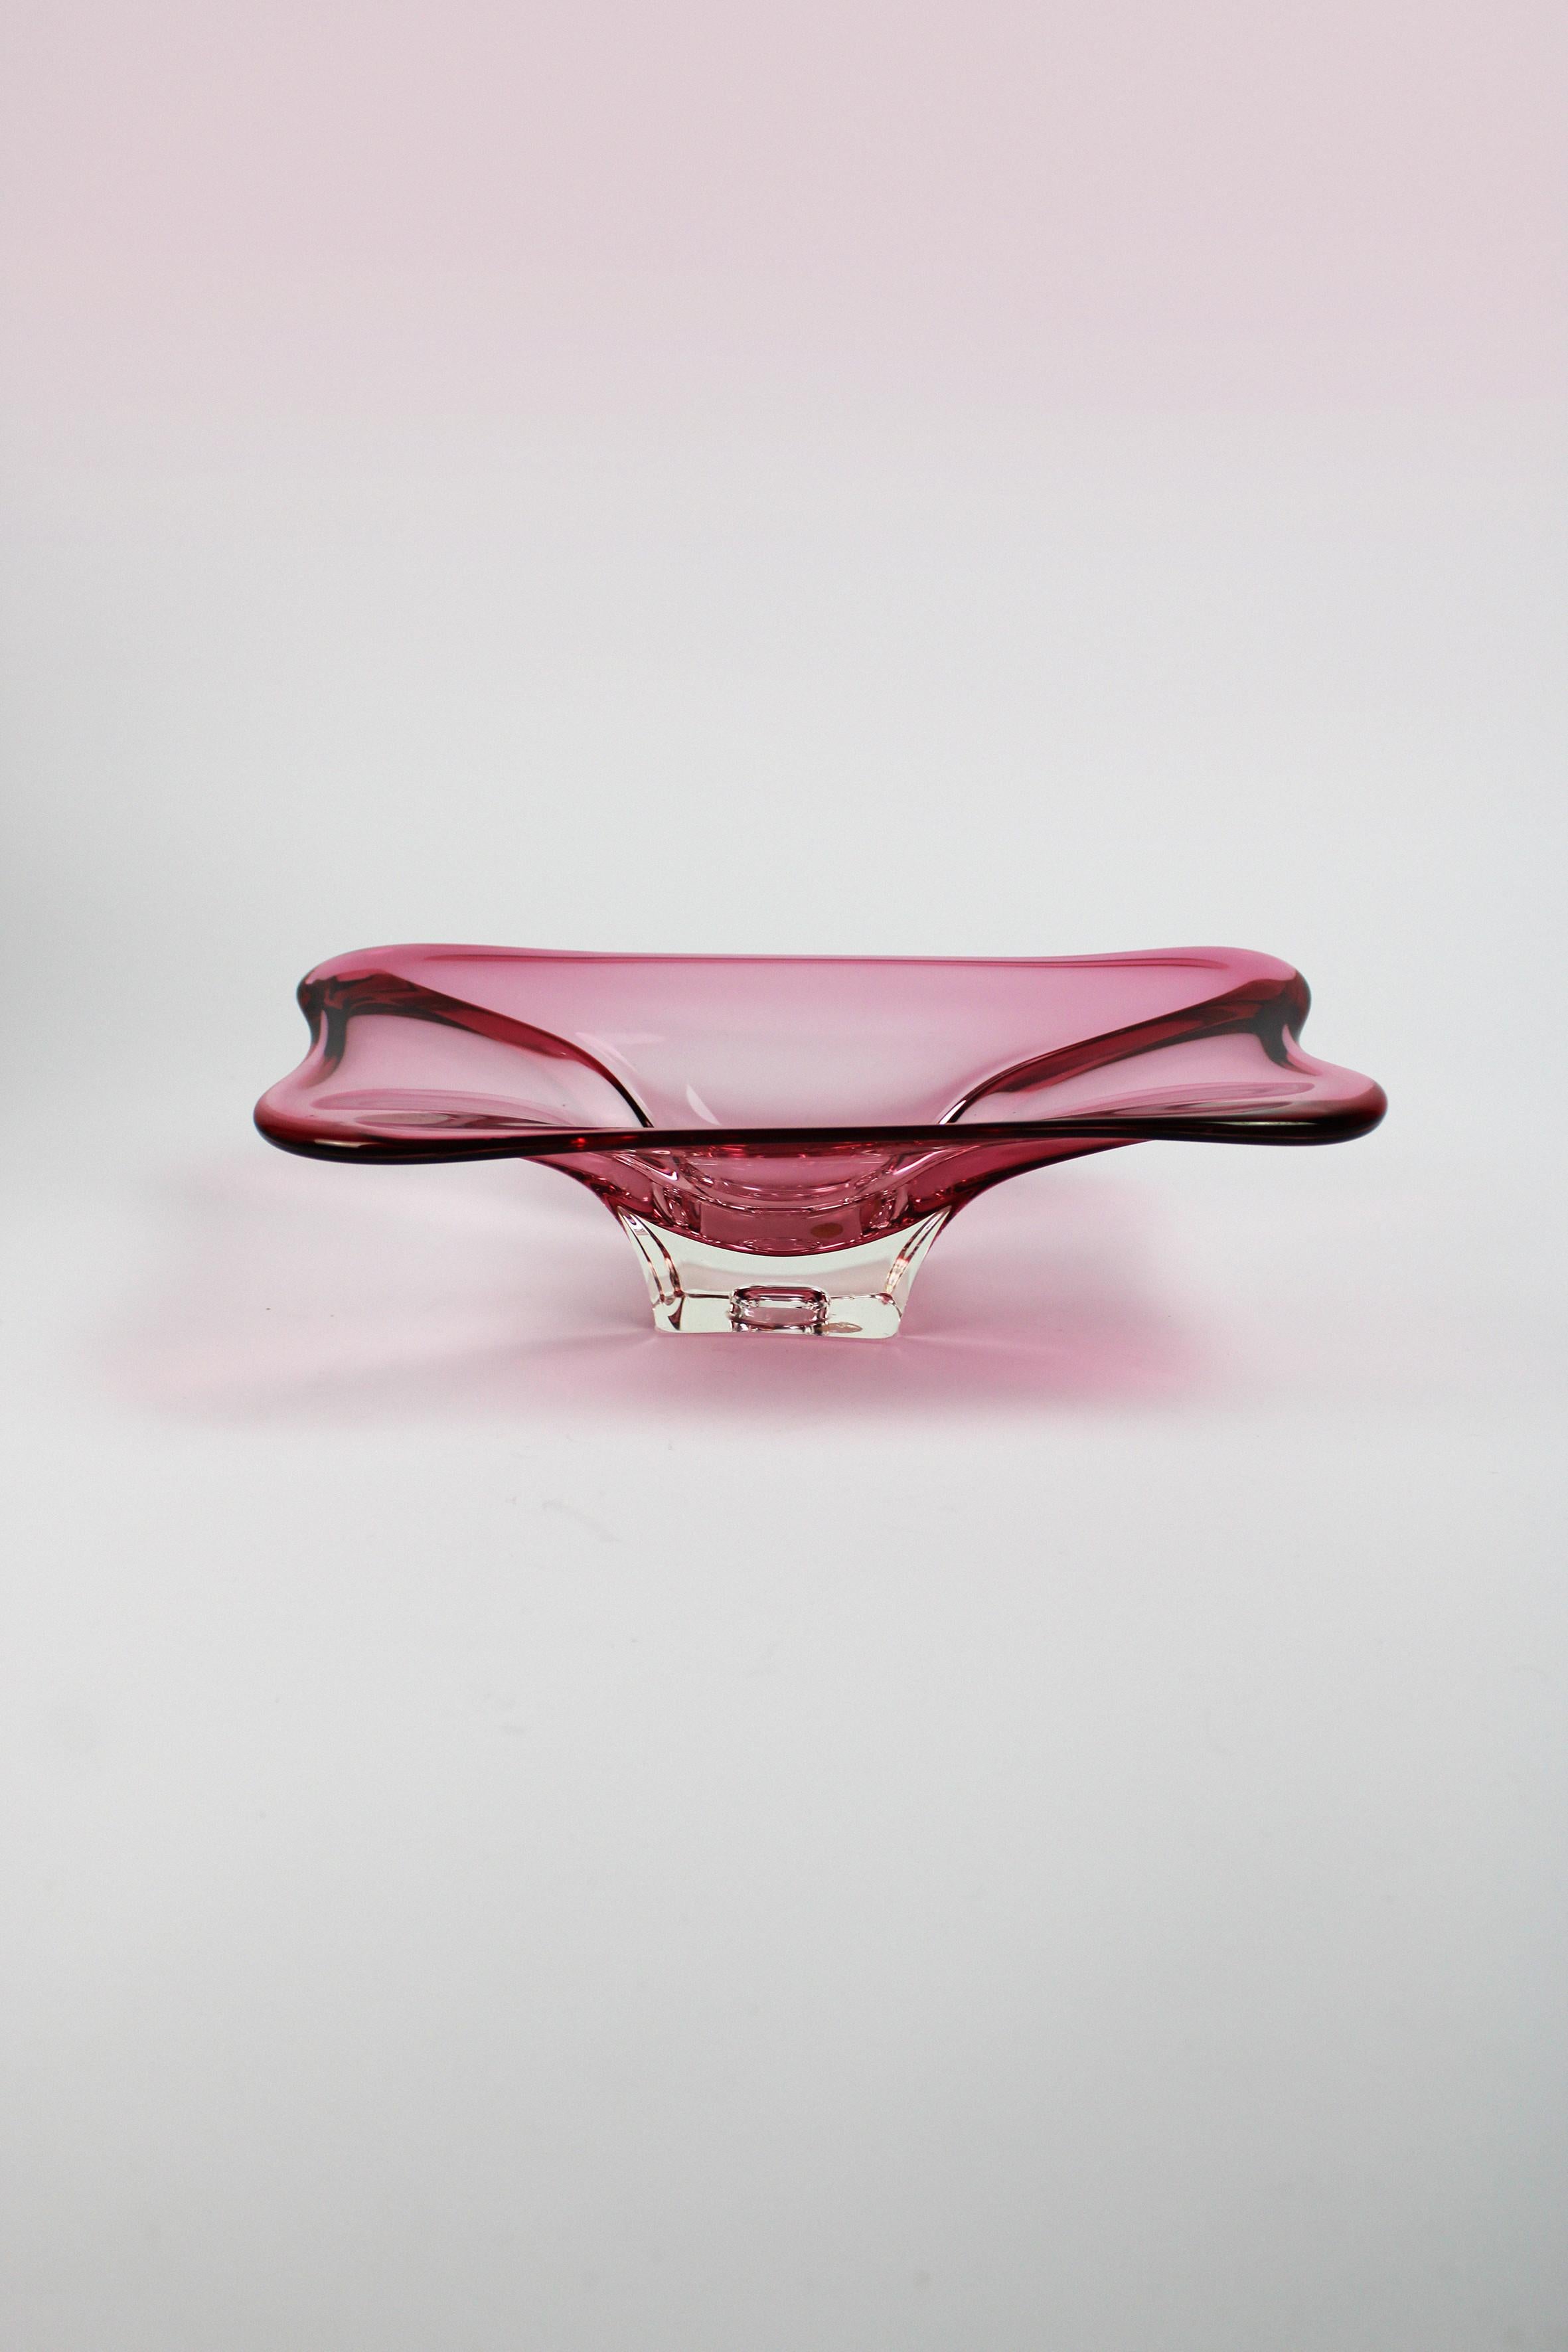 Wir präsentieren eine organisch geformte Schale oder Vide-Poche, ein Meisterwerk der mundgeblasenen Murano Collection'S. Diese Schale aus exquisitem Murano-Glas in einem bezaubernden rosa Farbton besticht durch ihr schönes und natürliches Design.